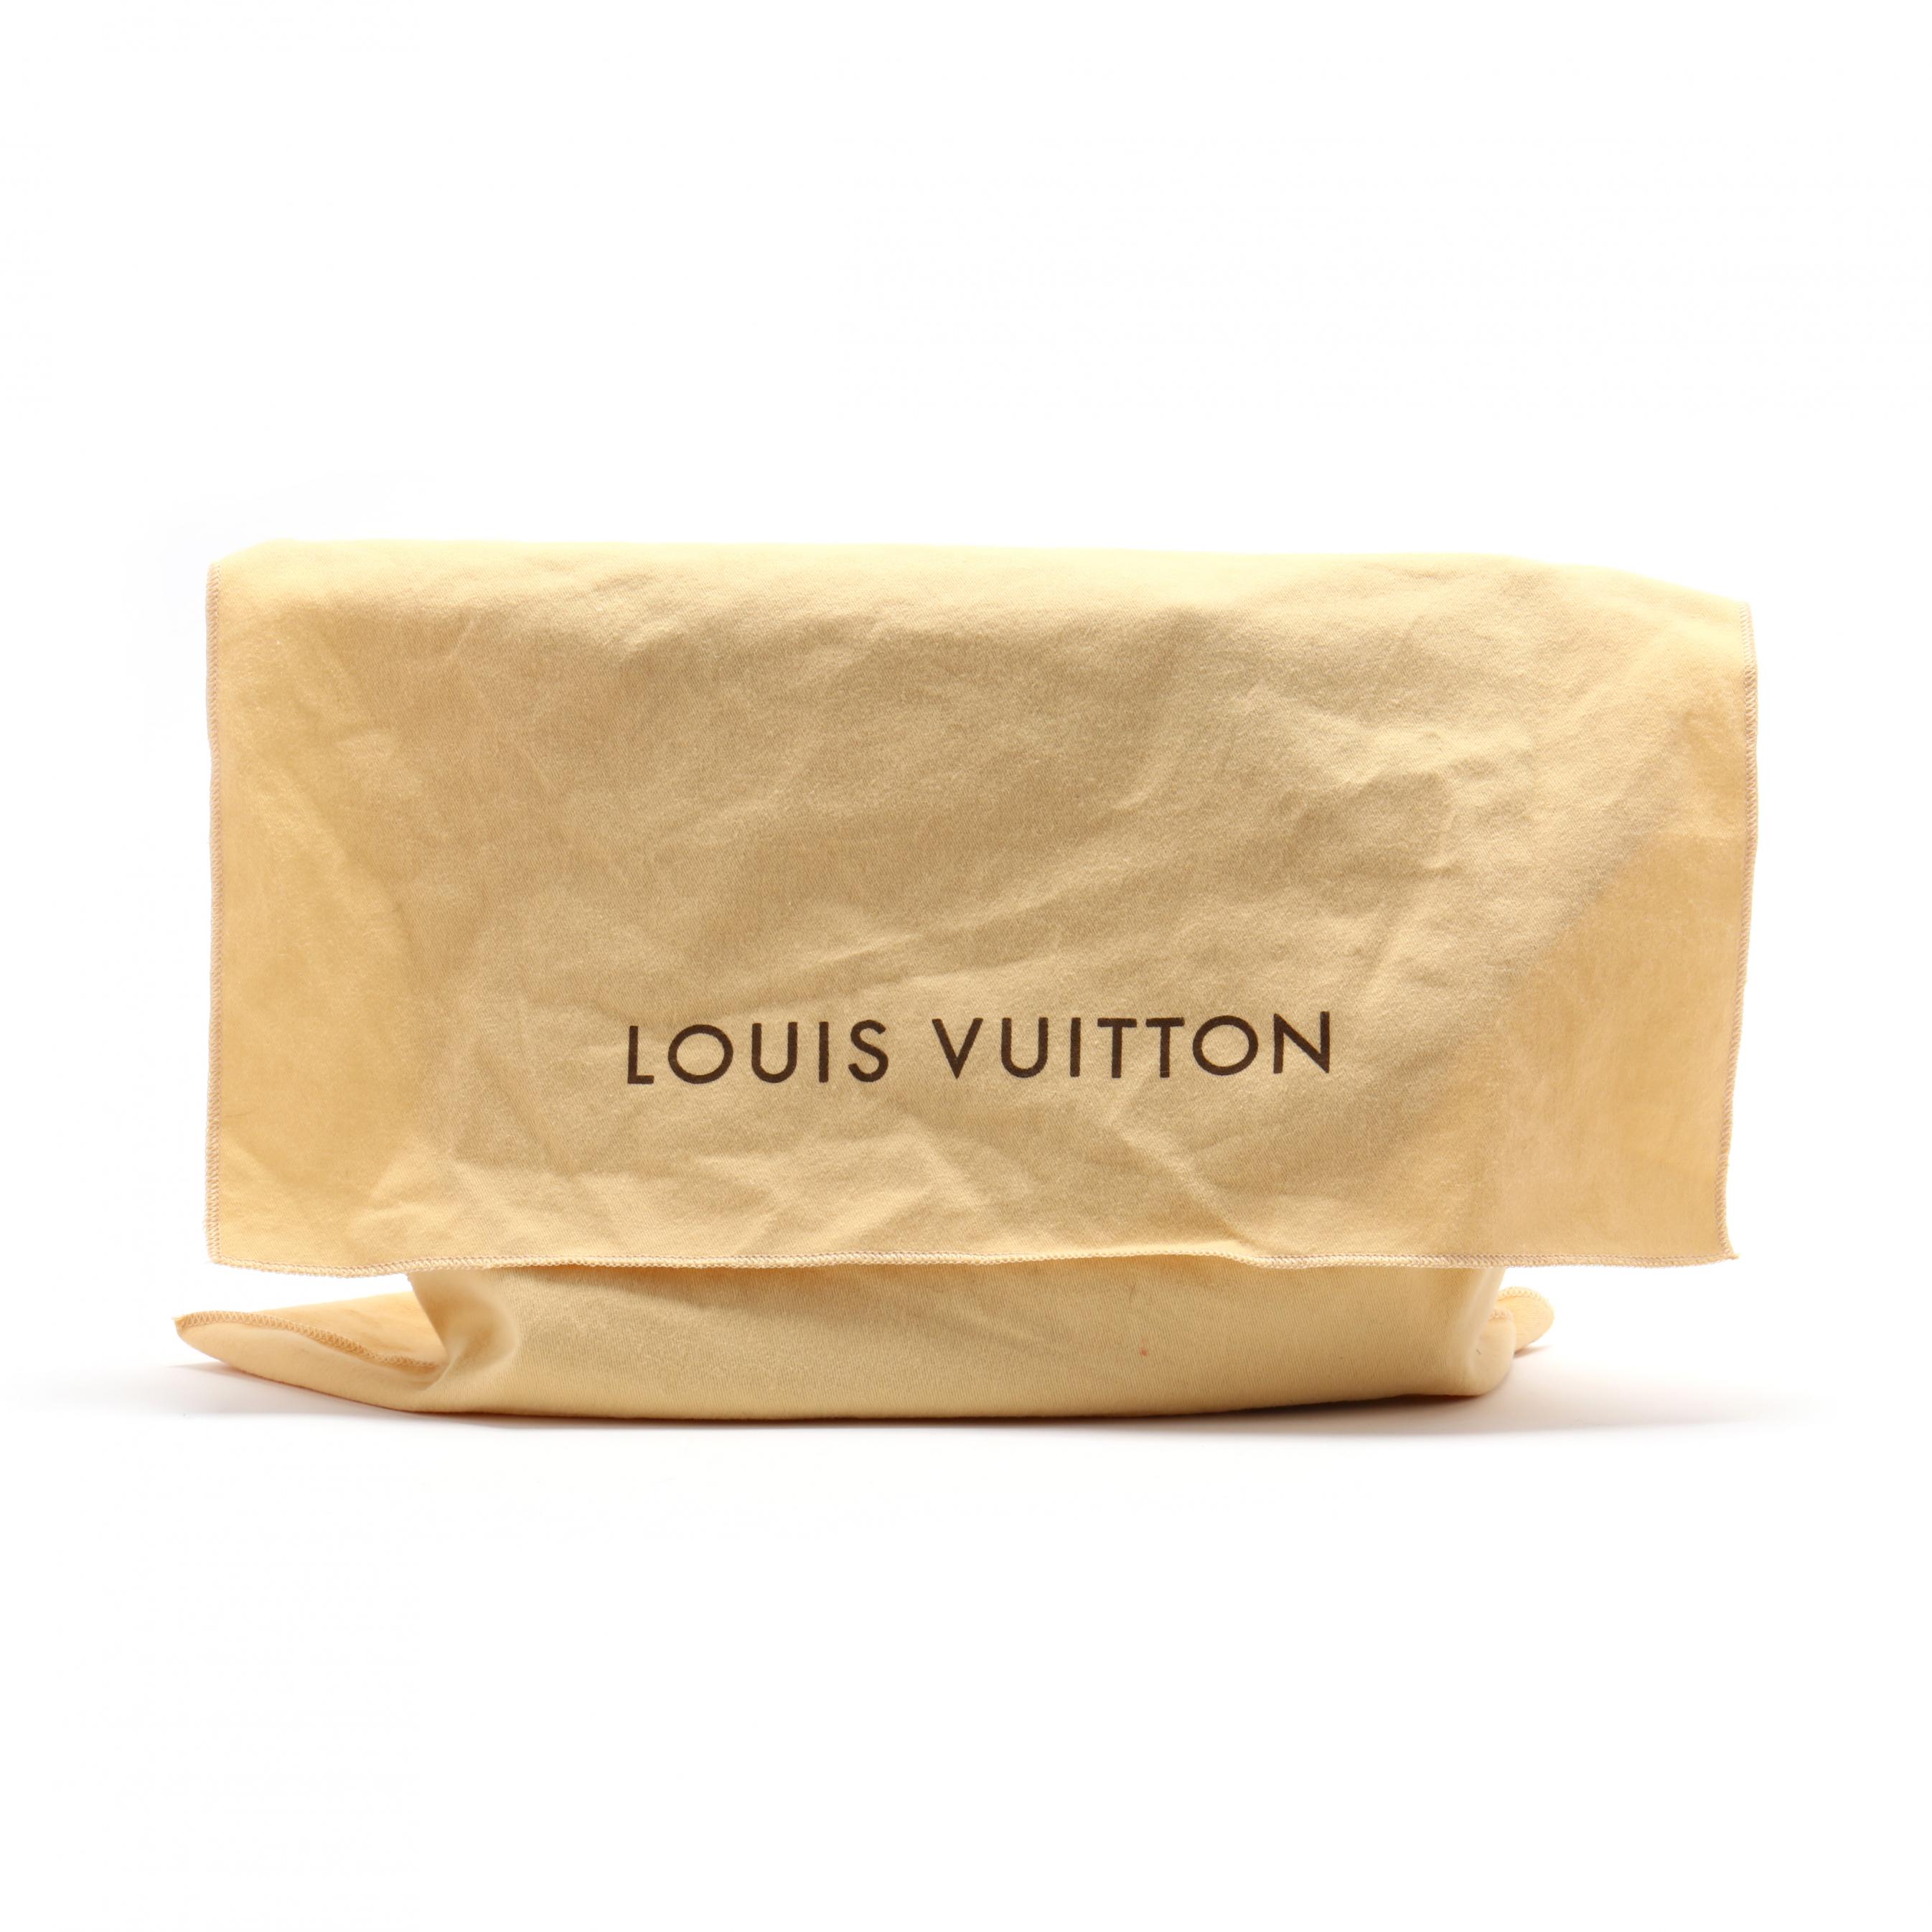 Sold at Auction: AUTHENTIC LOUIS VUITTON DUST BAG